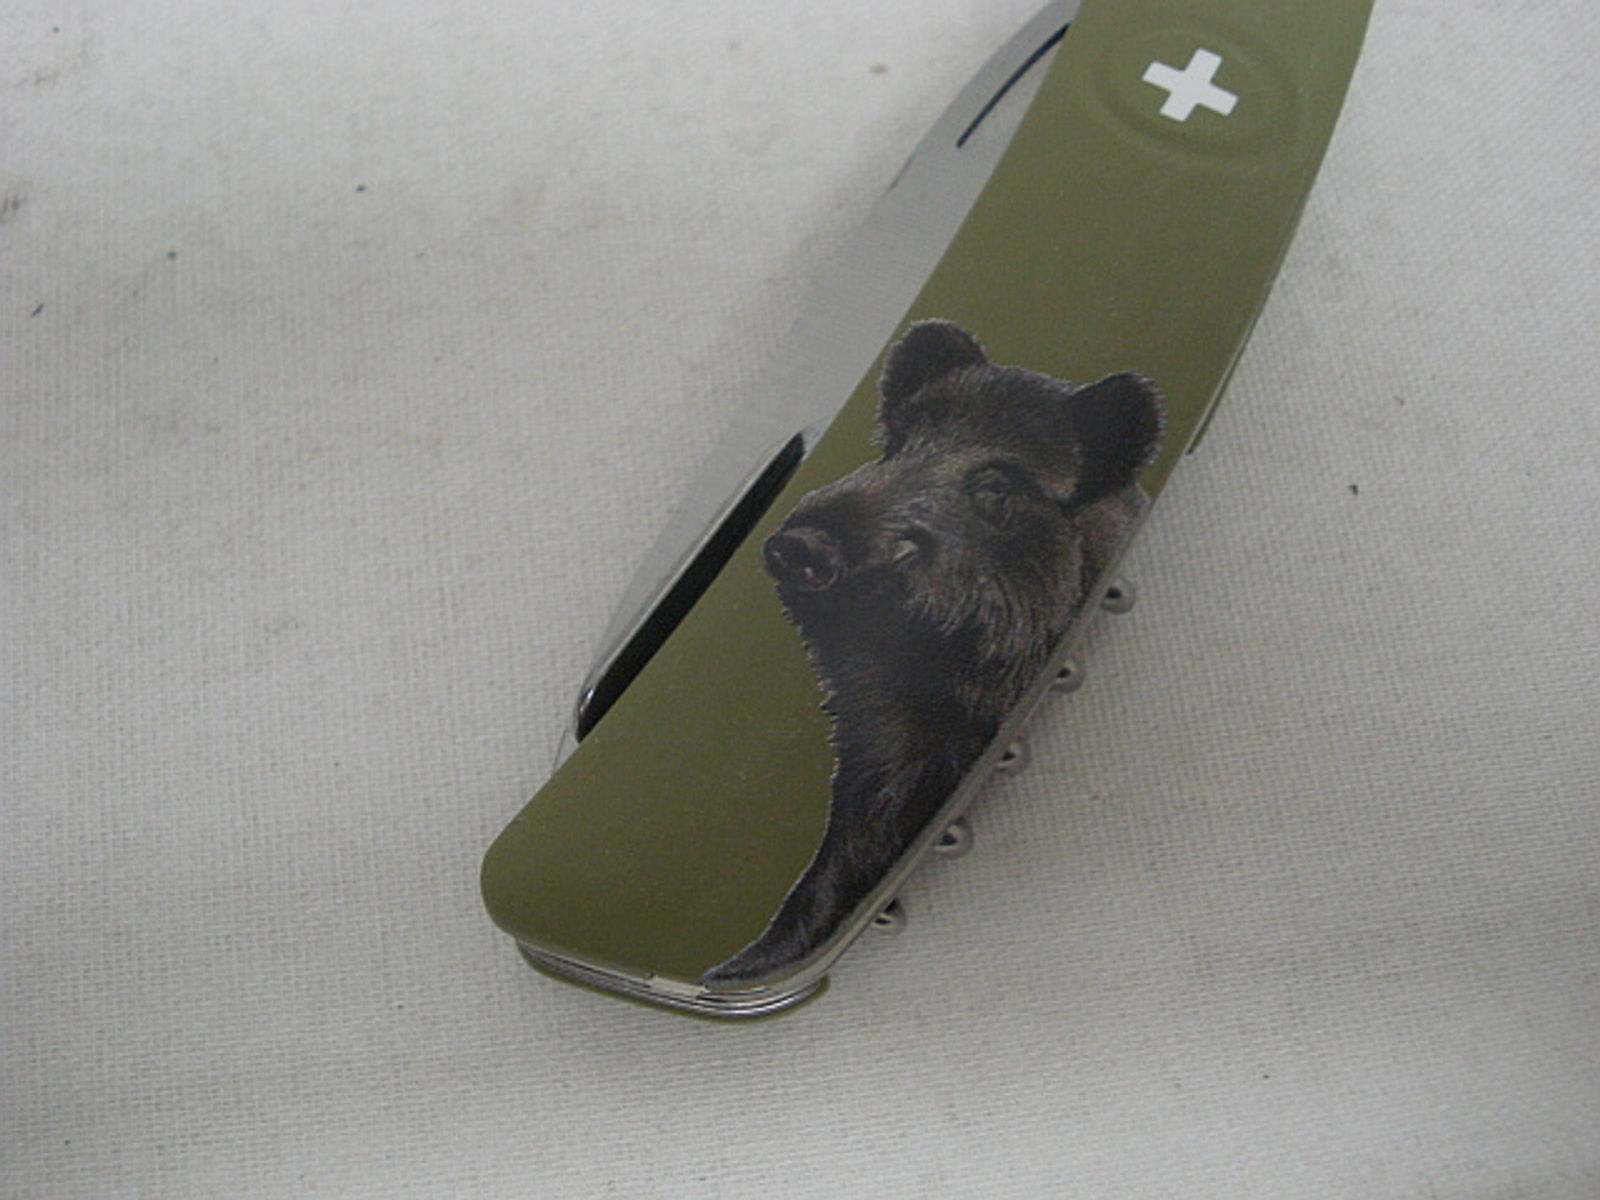 SWIZA Messer, Wildschwein - 440, Sicherheitsarretierung